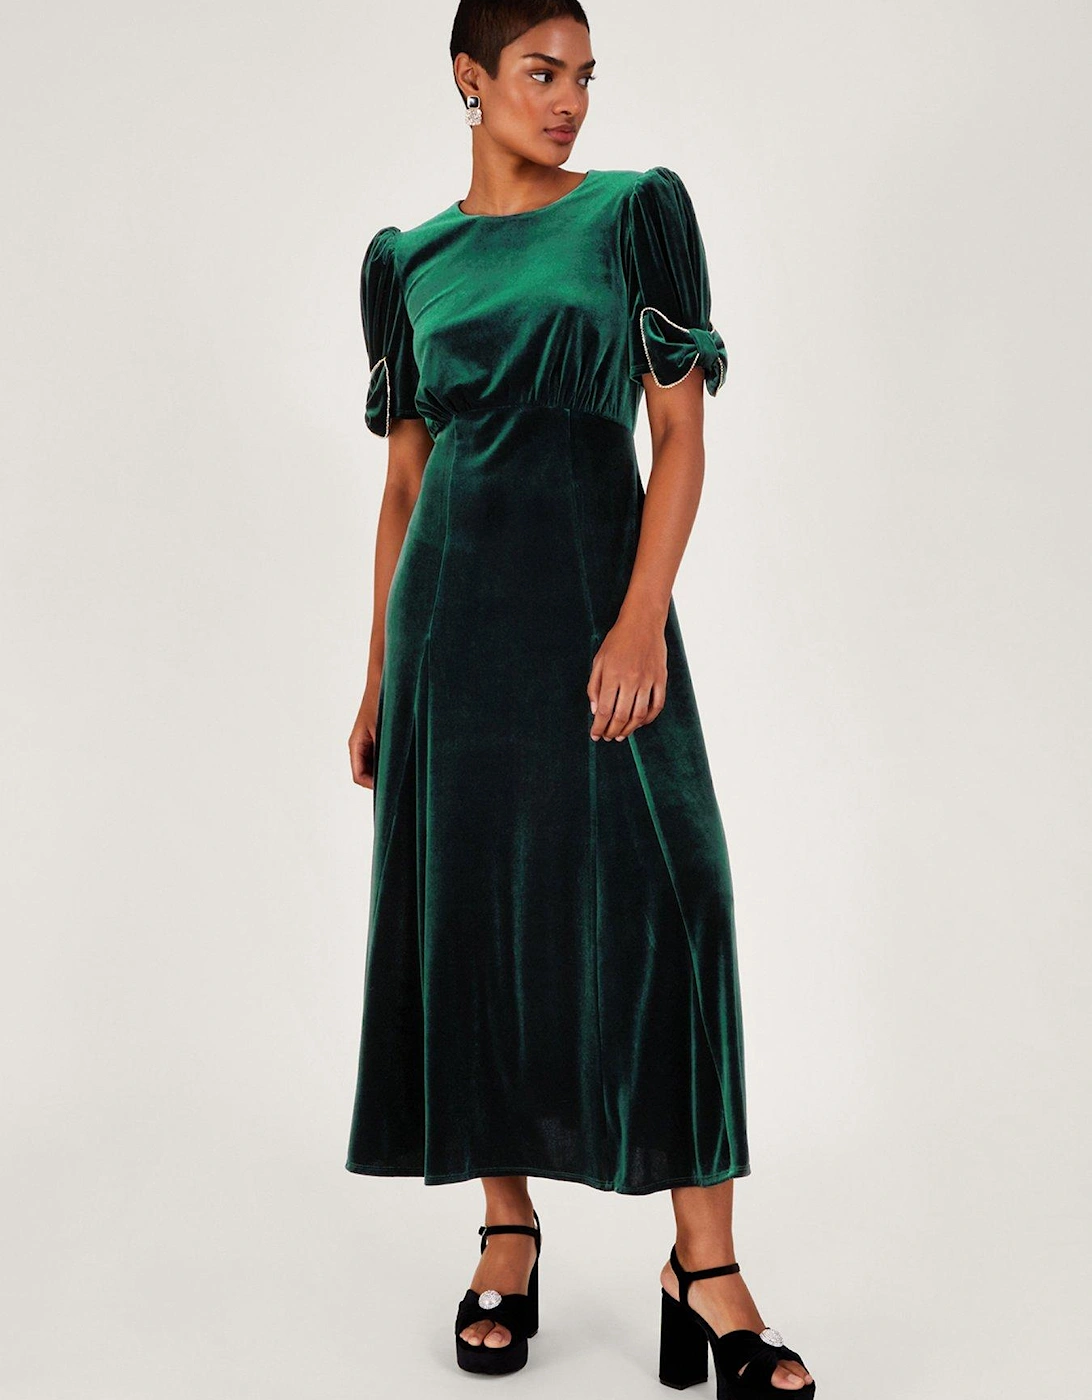 Belle Velvet Bow Dress - Green, 2 of 1